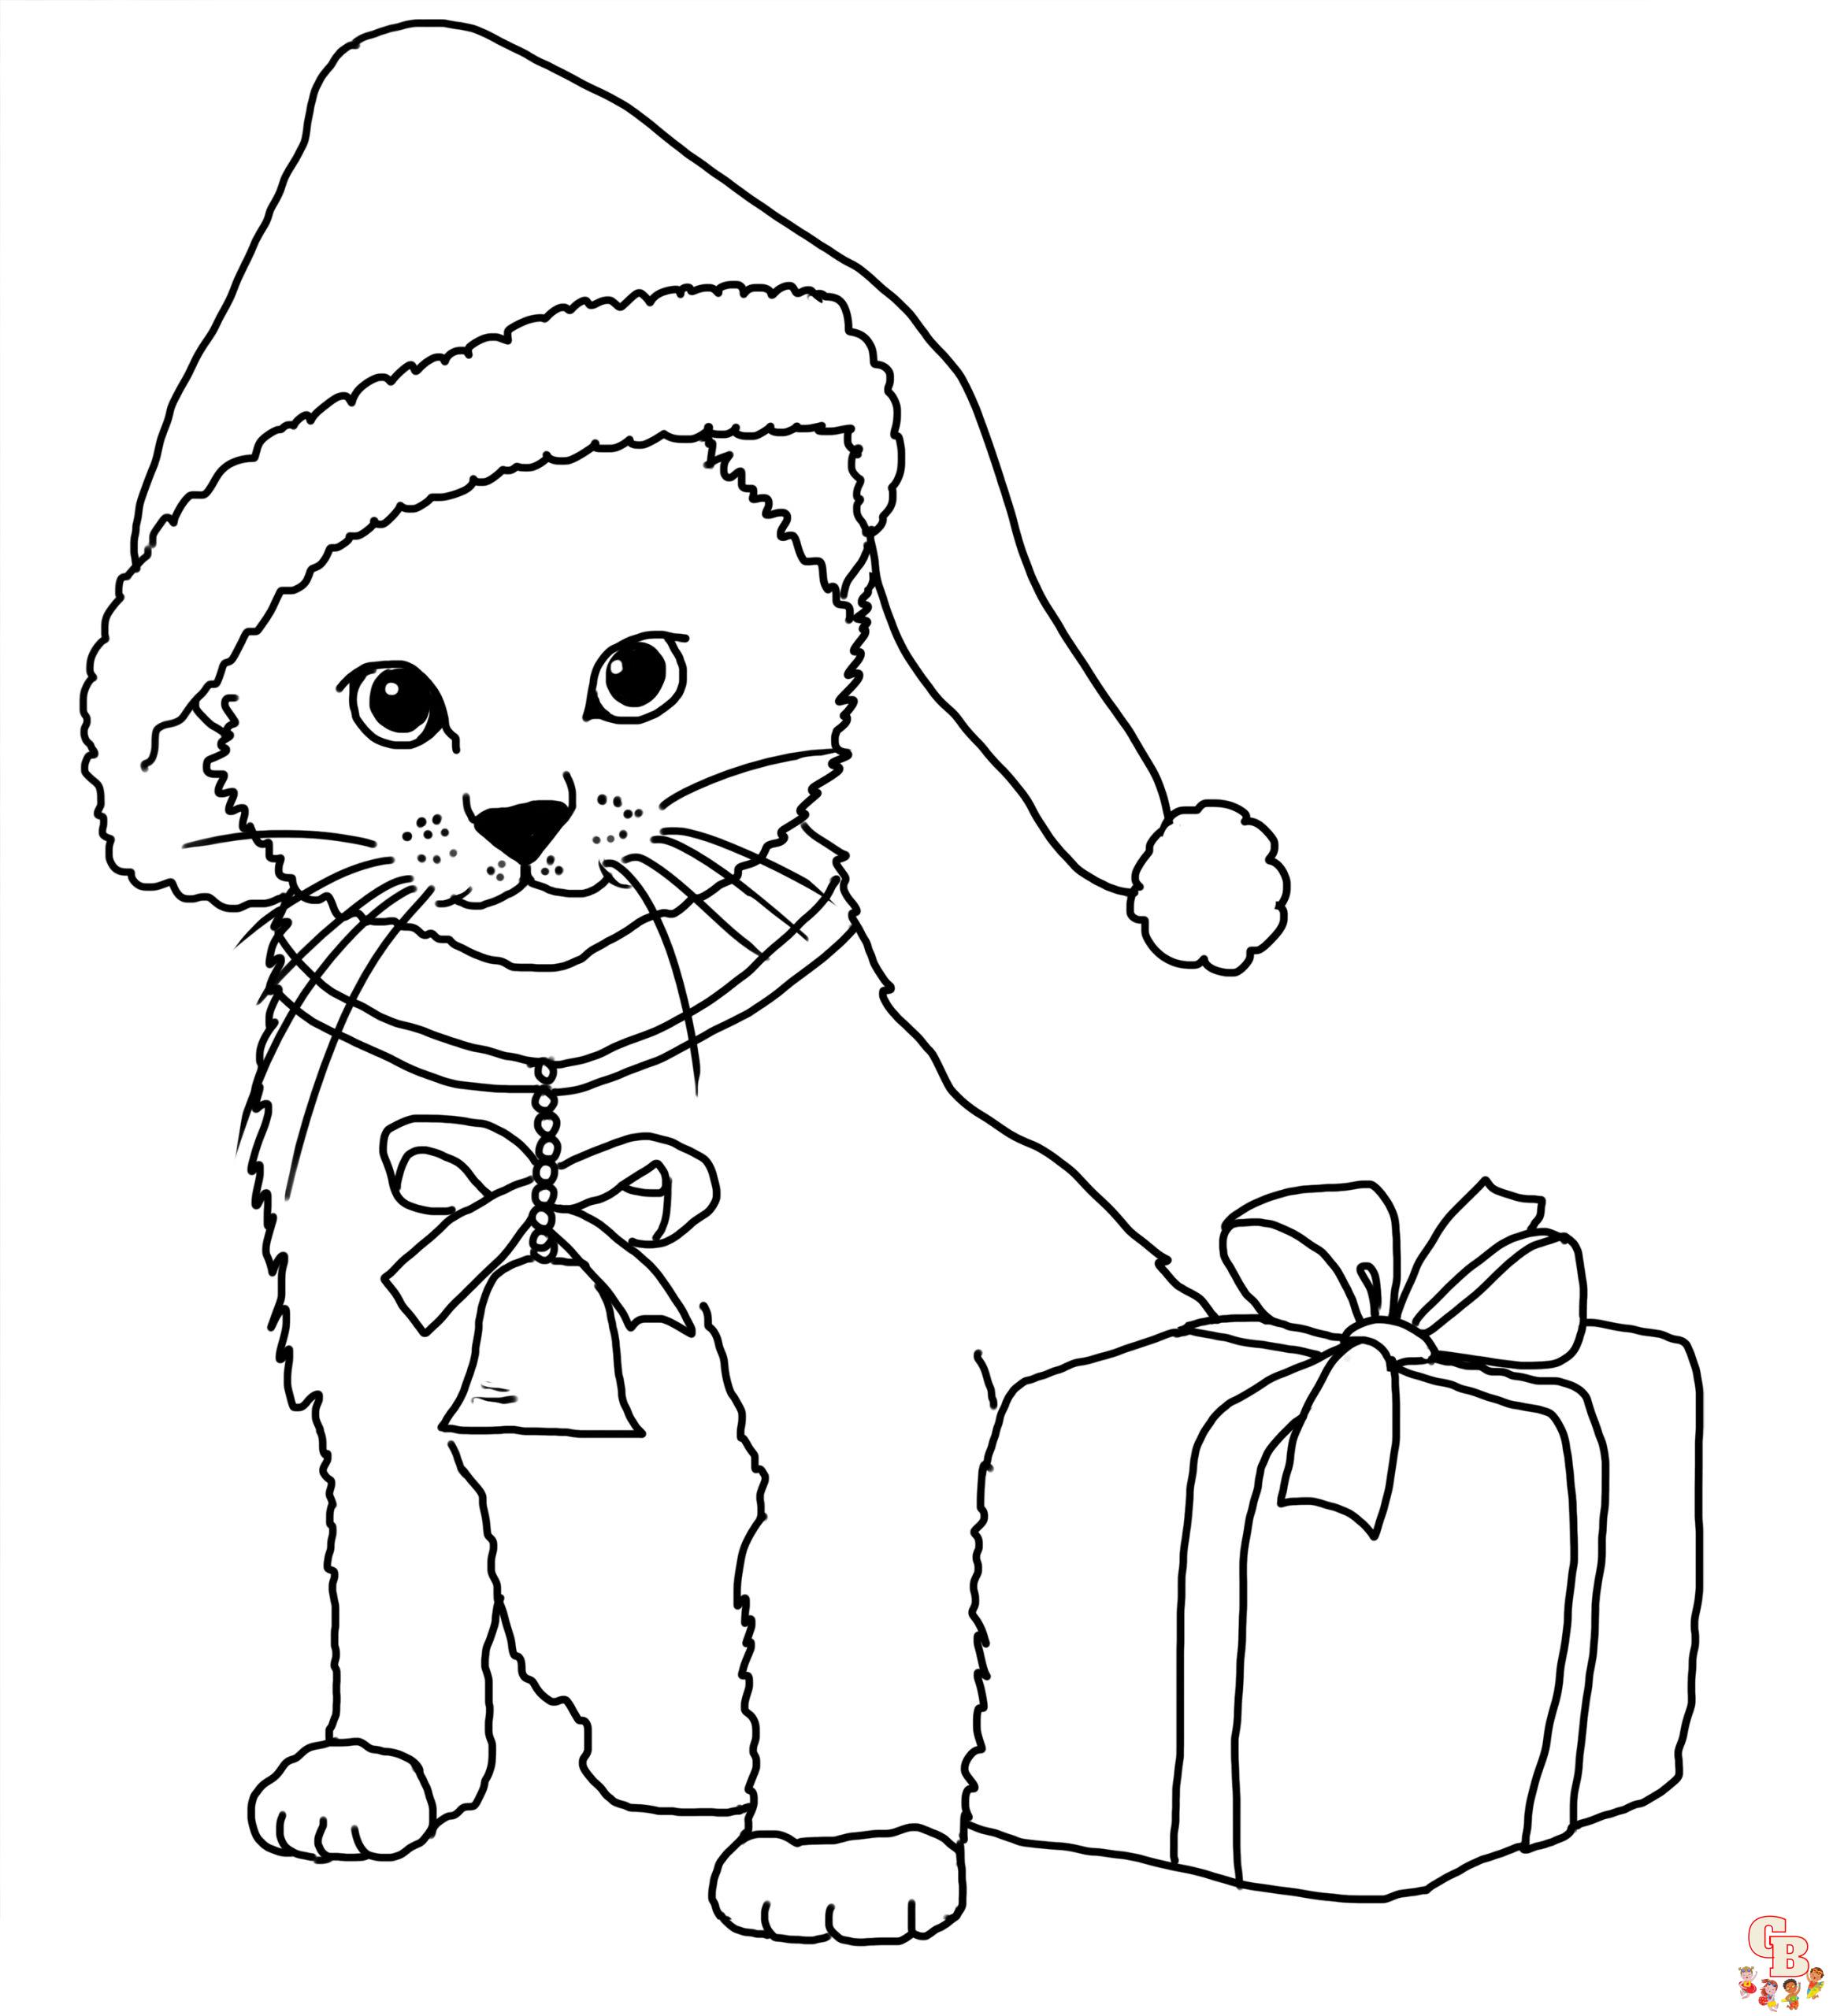 Desenhos para colorir gratuitos de Gatos para crianças - Gatos - Coloring  Pages for Adults